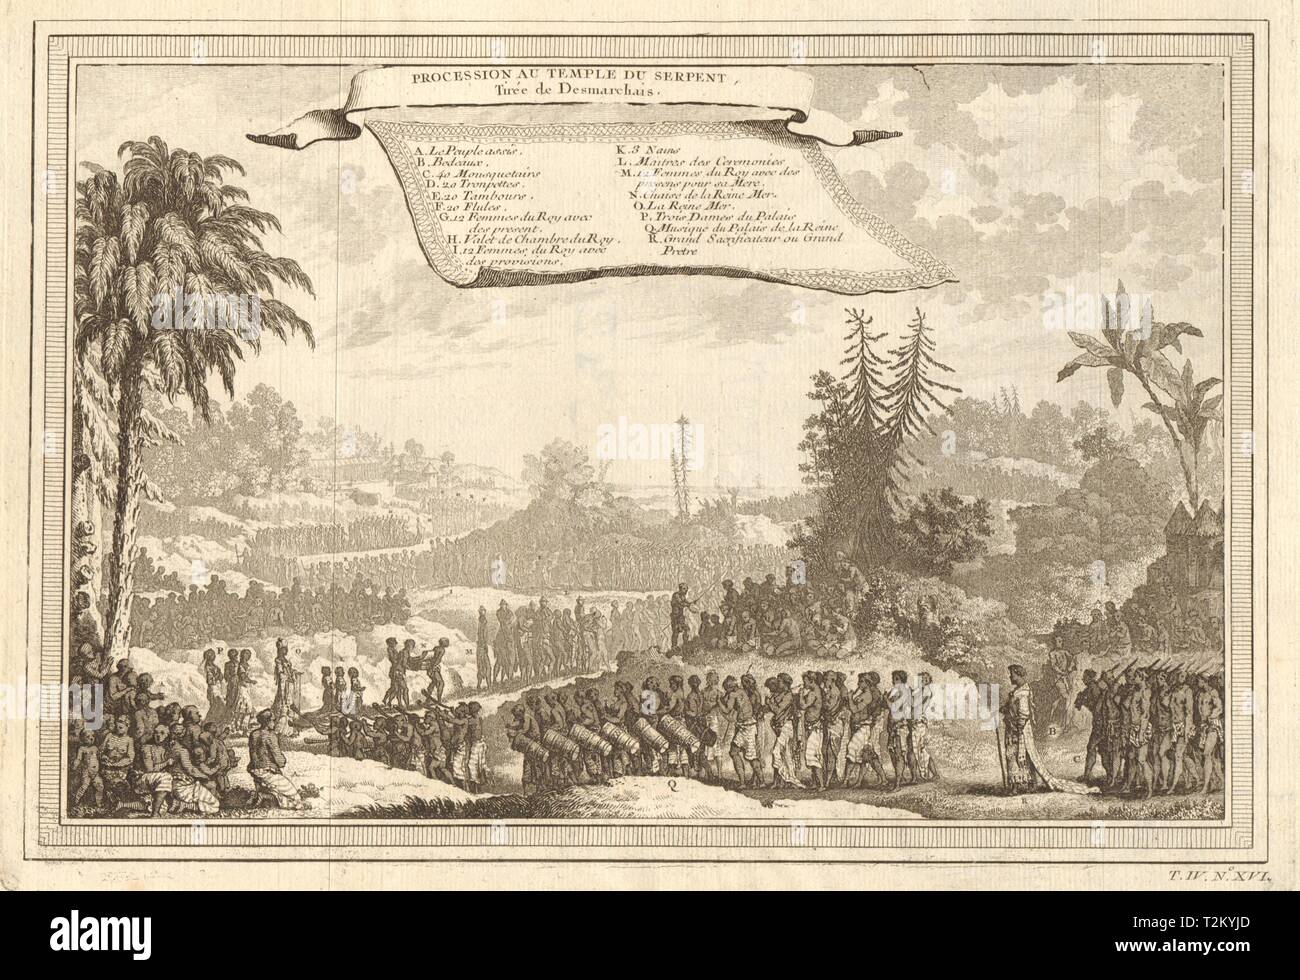 'Procession au Temple du Serpent'. Ouidah Ouidah culte du Serpent. Desmarchais 1747 Banque D'Images